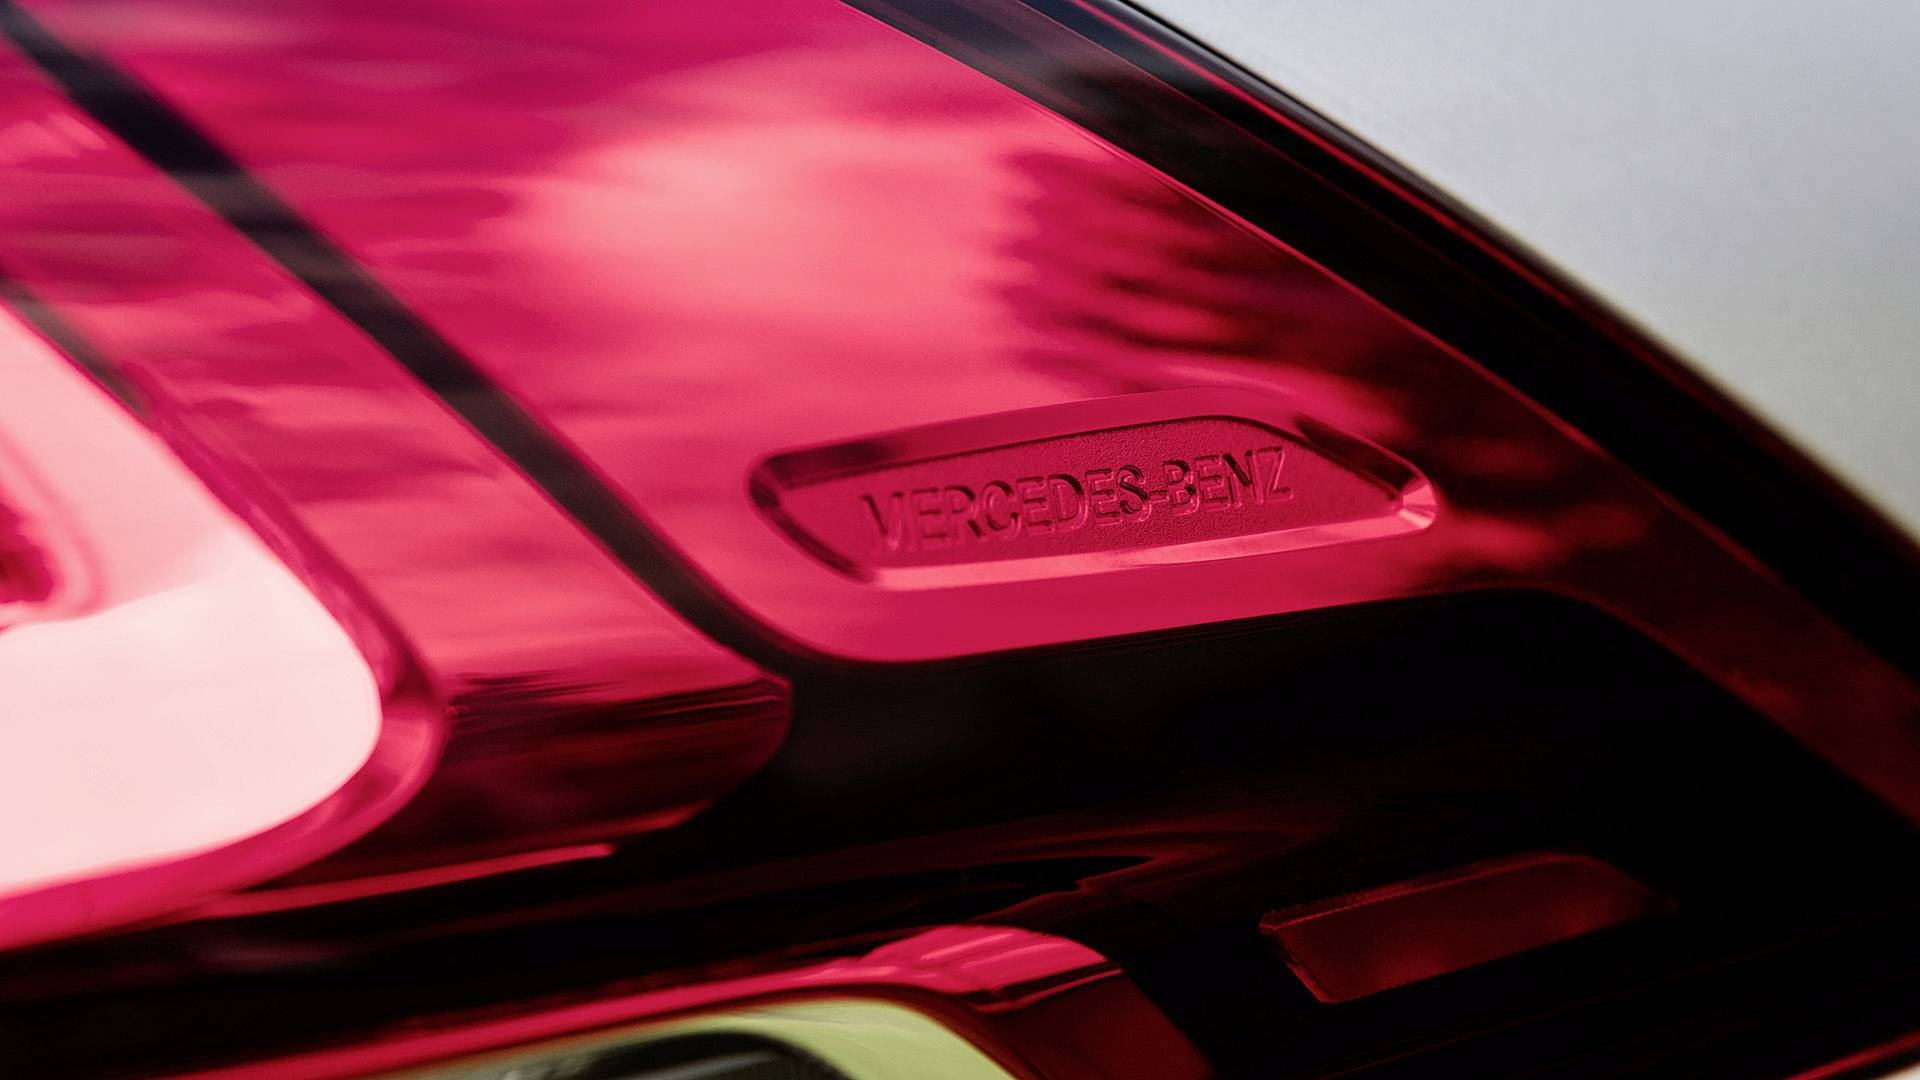 2019 Mercedes-Benz GLE tanıtıldı; hafif hibrit teknolojisi ve daha fazlası